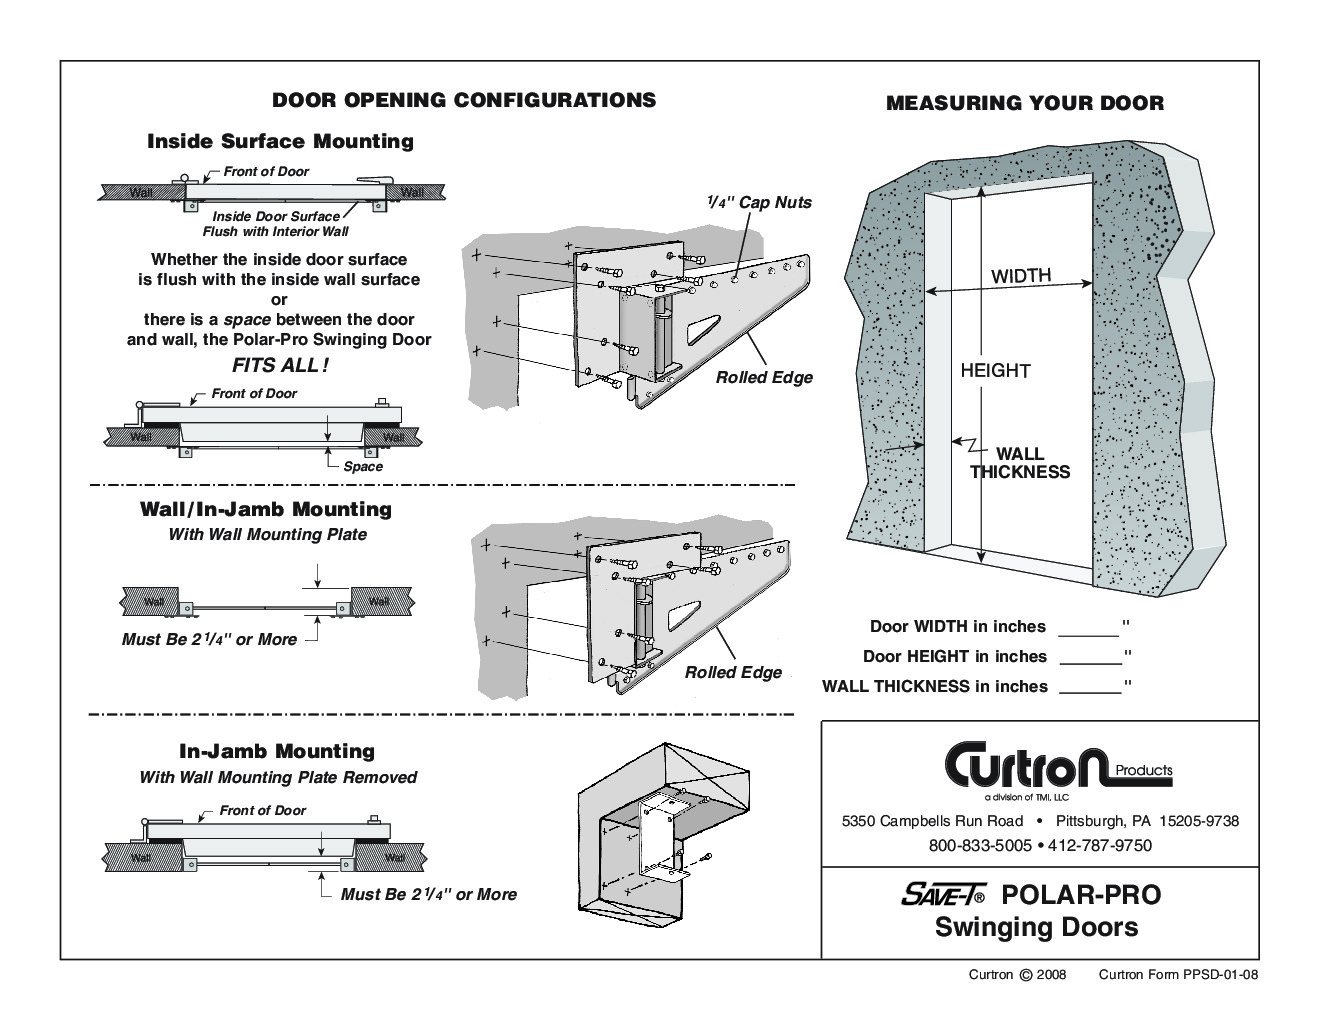 Curtron PP-C-080-3084 Flexible Cooler Freezer Door